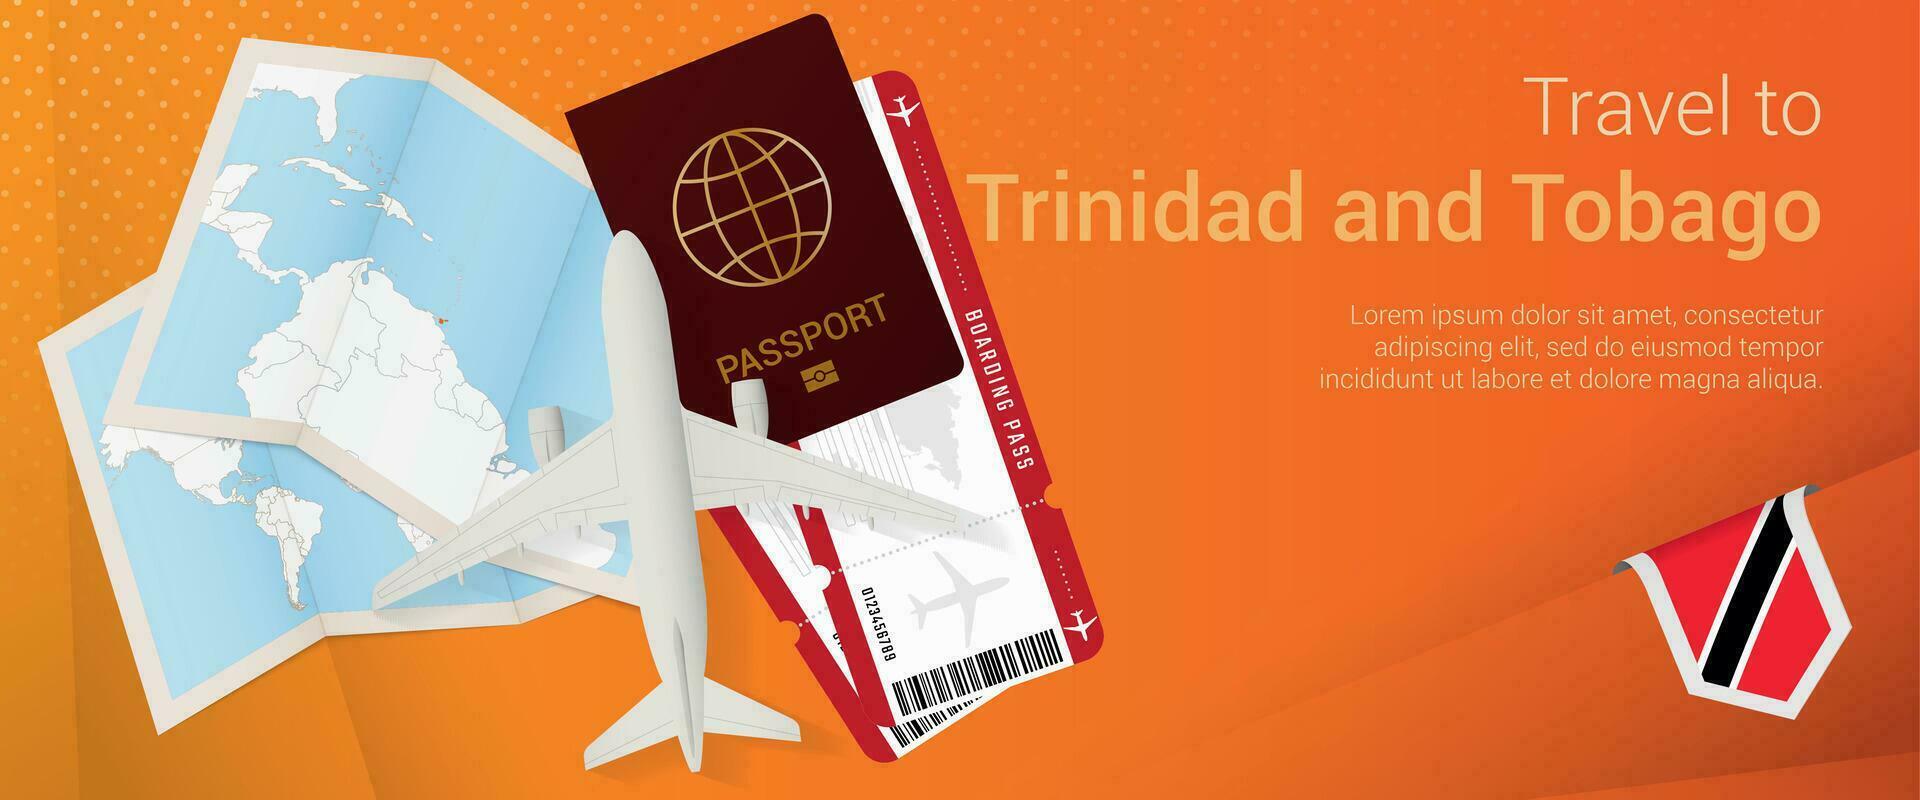 viaje a trinidad y tobago pop-under bandera. viaje bandera con pasaporte, Entradas, avión, embarque aprobar, mapa y bandera de trinidad y tobago vector